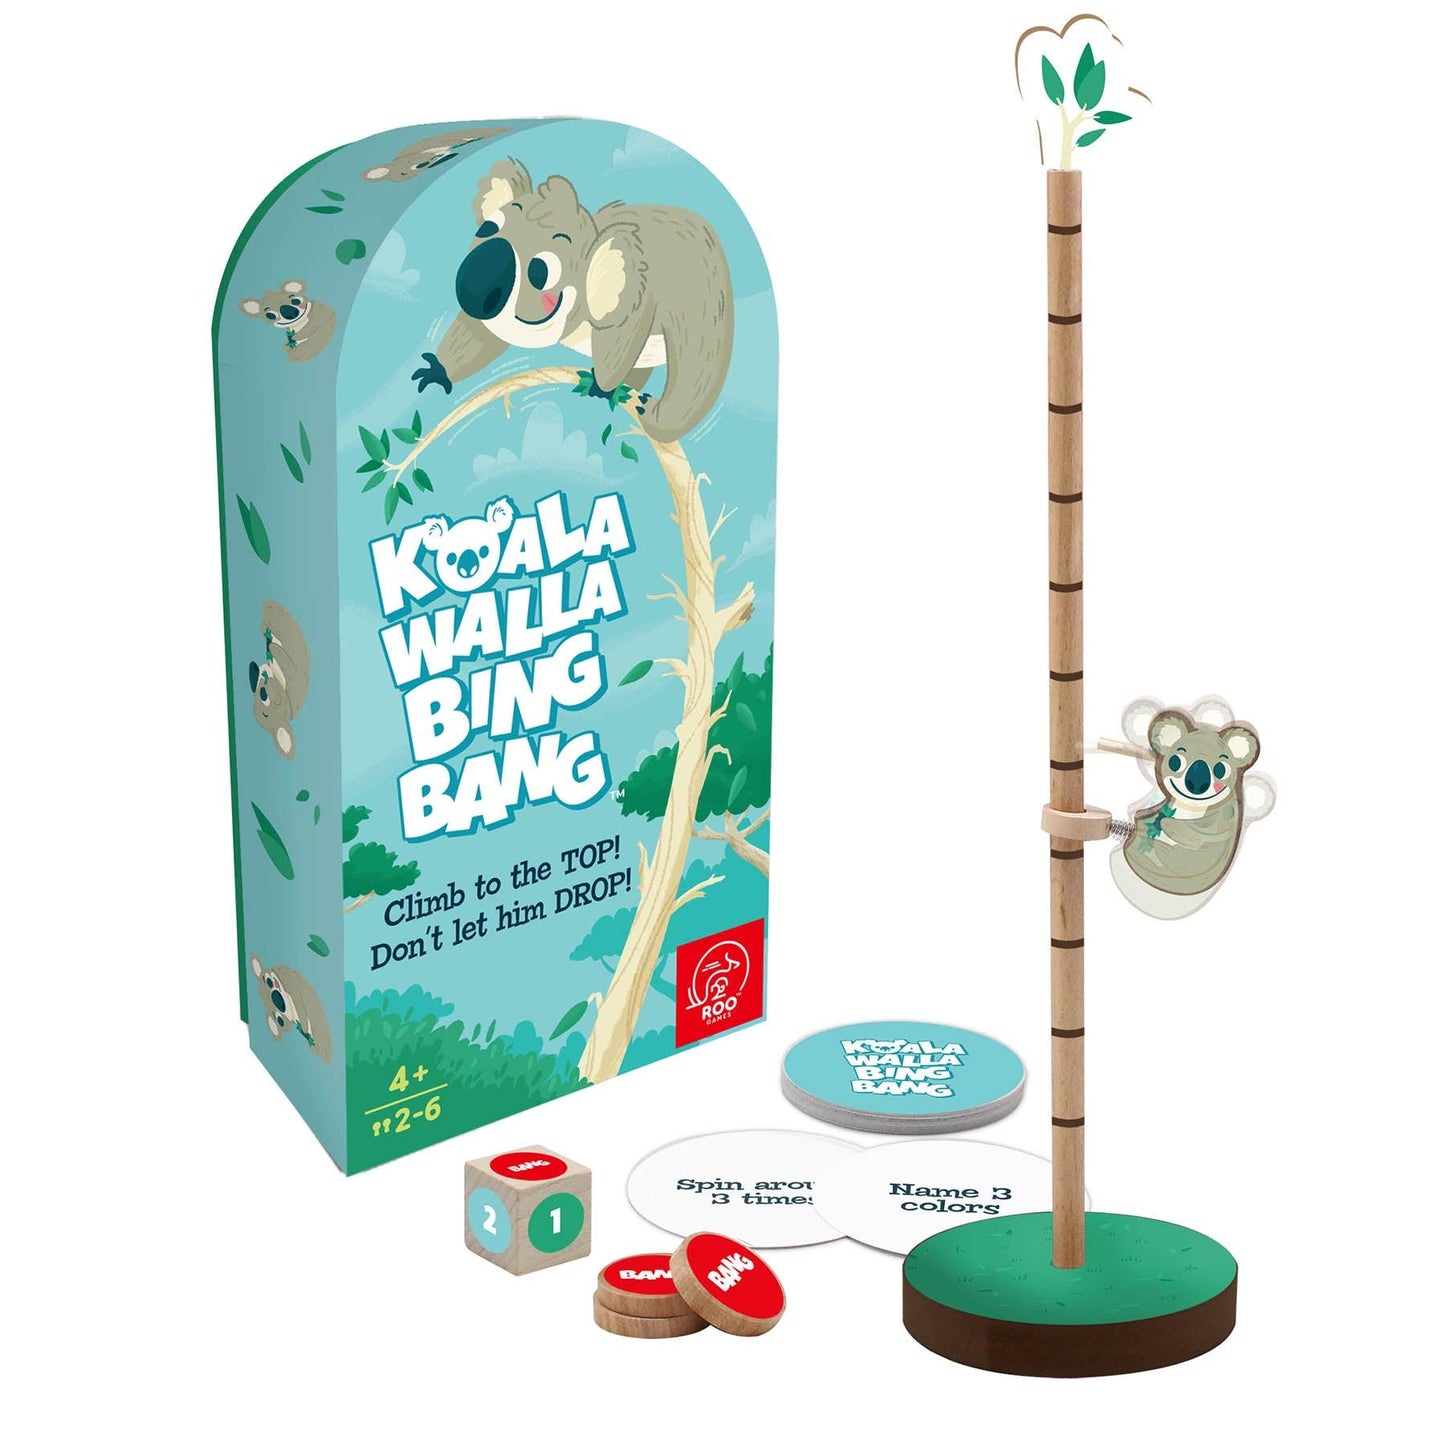 Koala Walla Bing Bang - Fast-Paced, Active Dice Game - Loomini